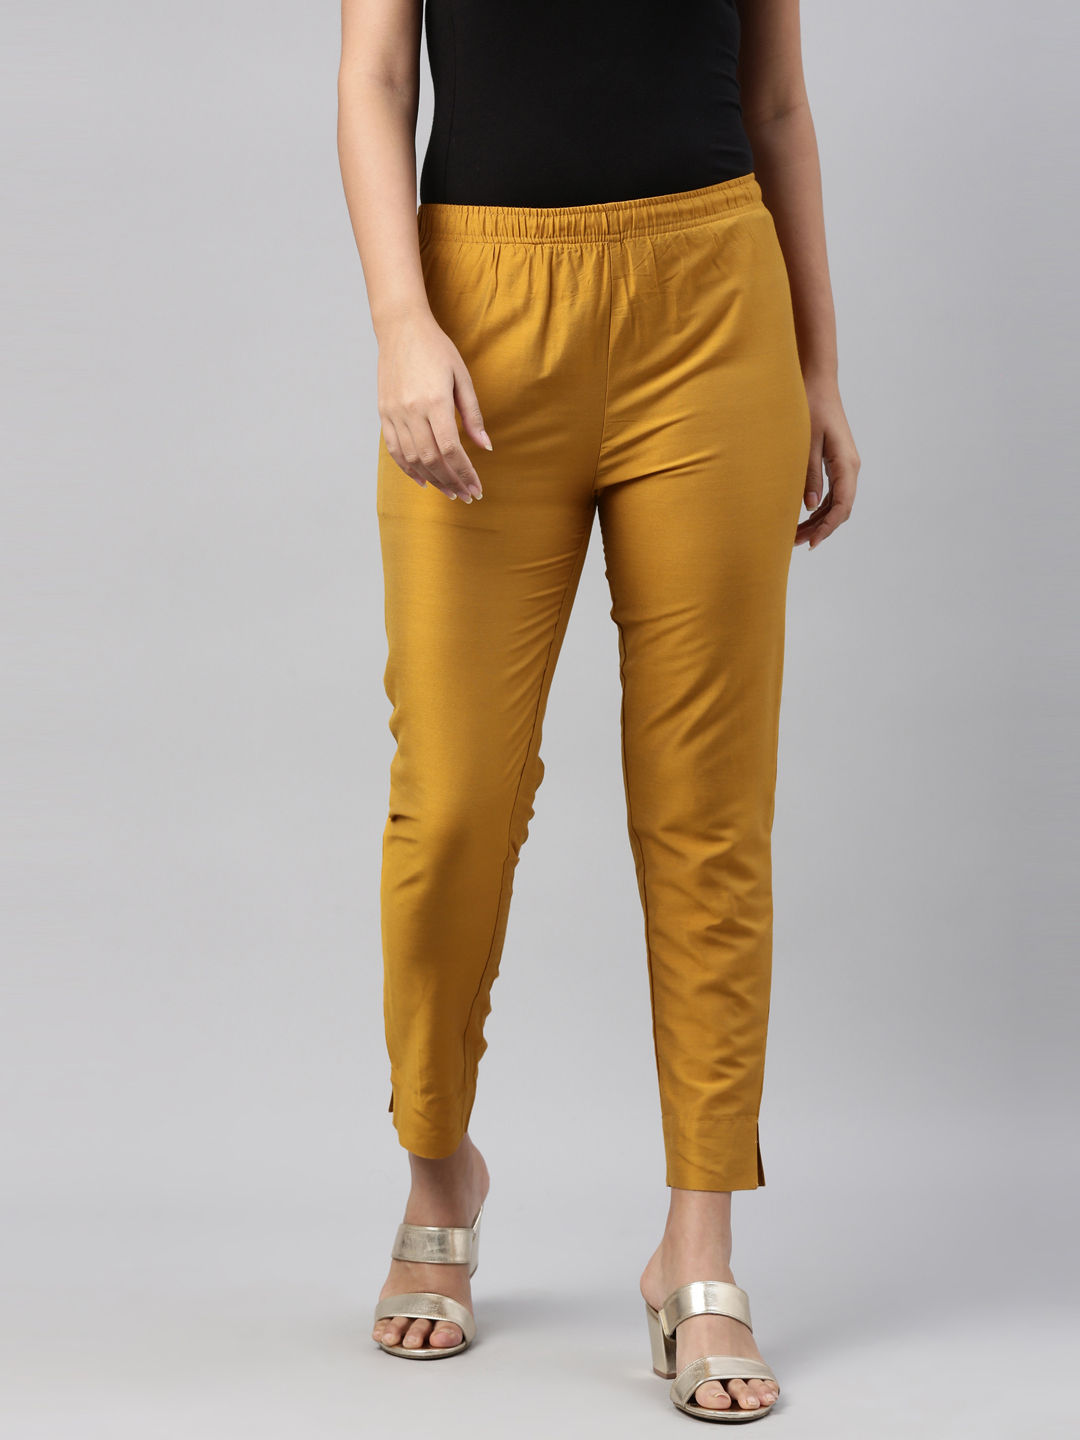 Buy Van Heusen Yellow Trousers Online  699643  Van Heusen